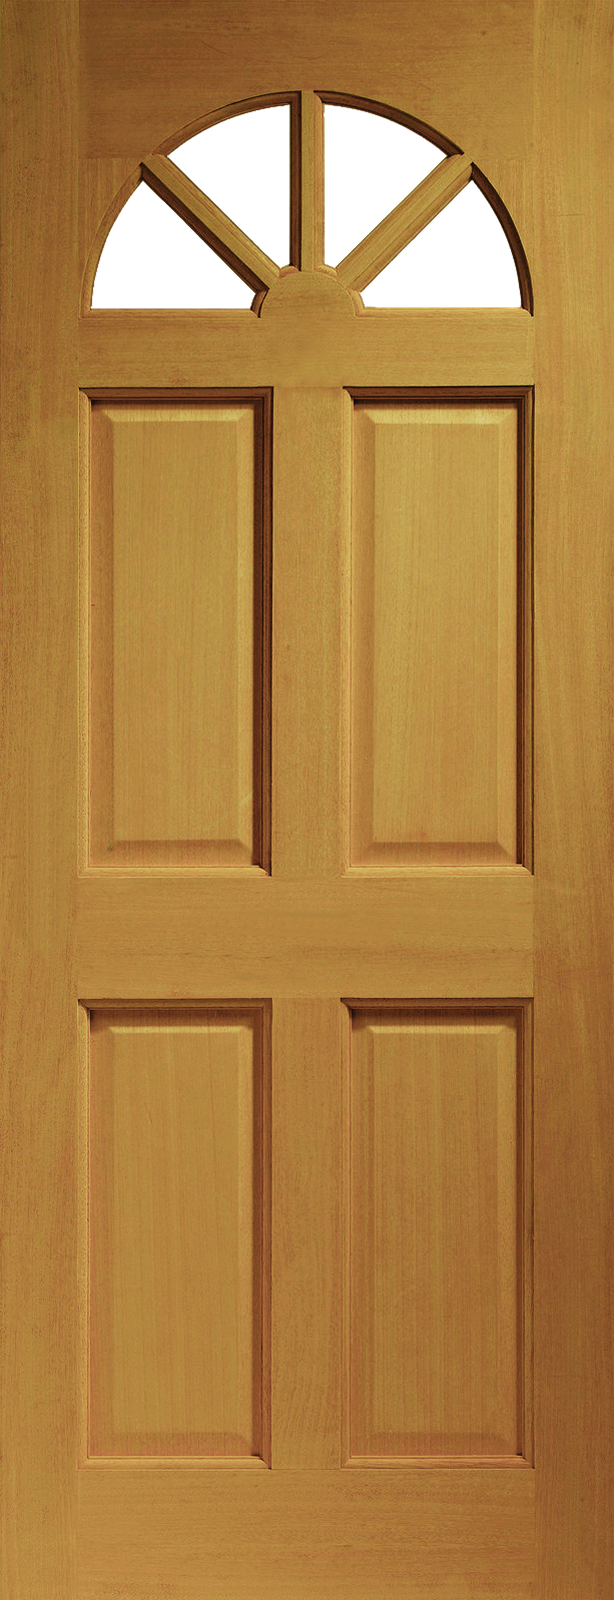 Дверь PNG